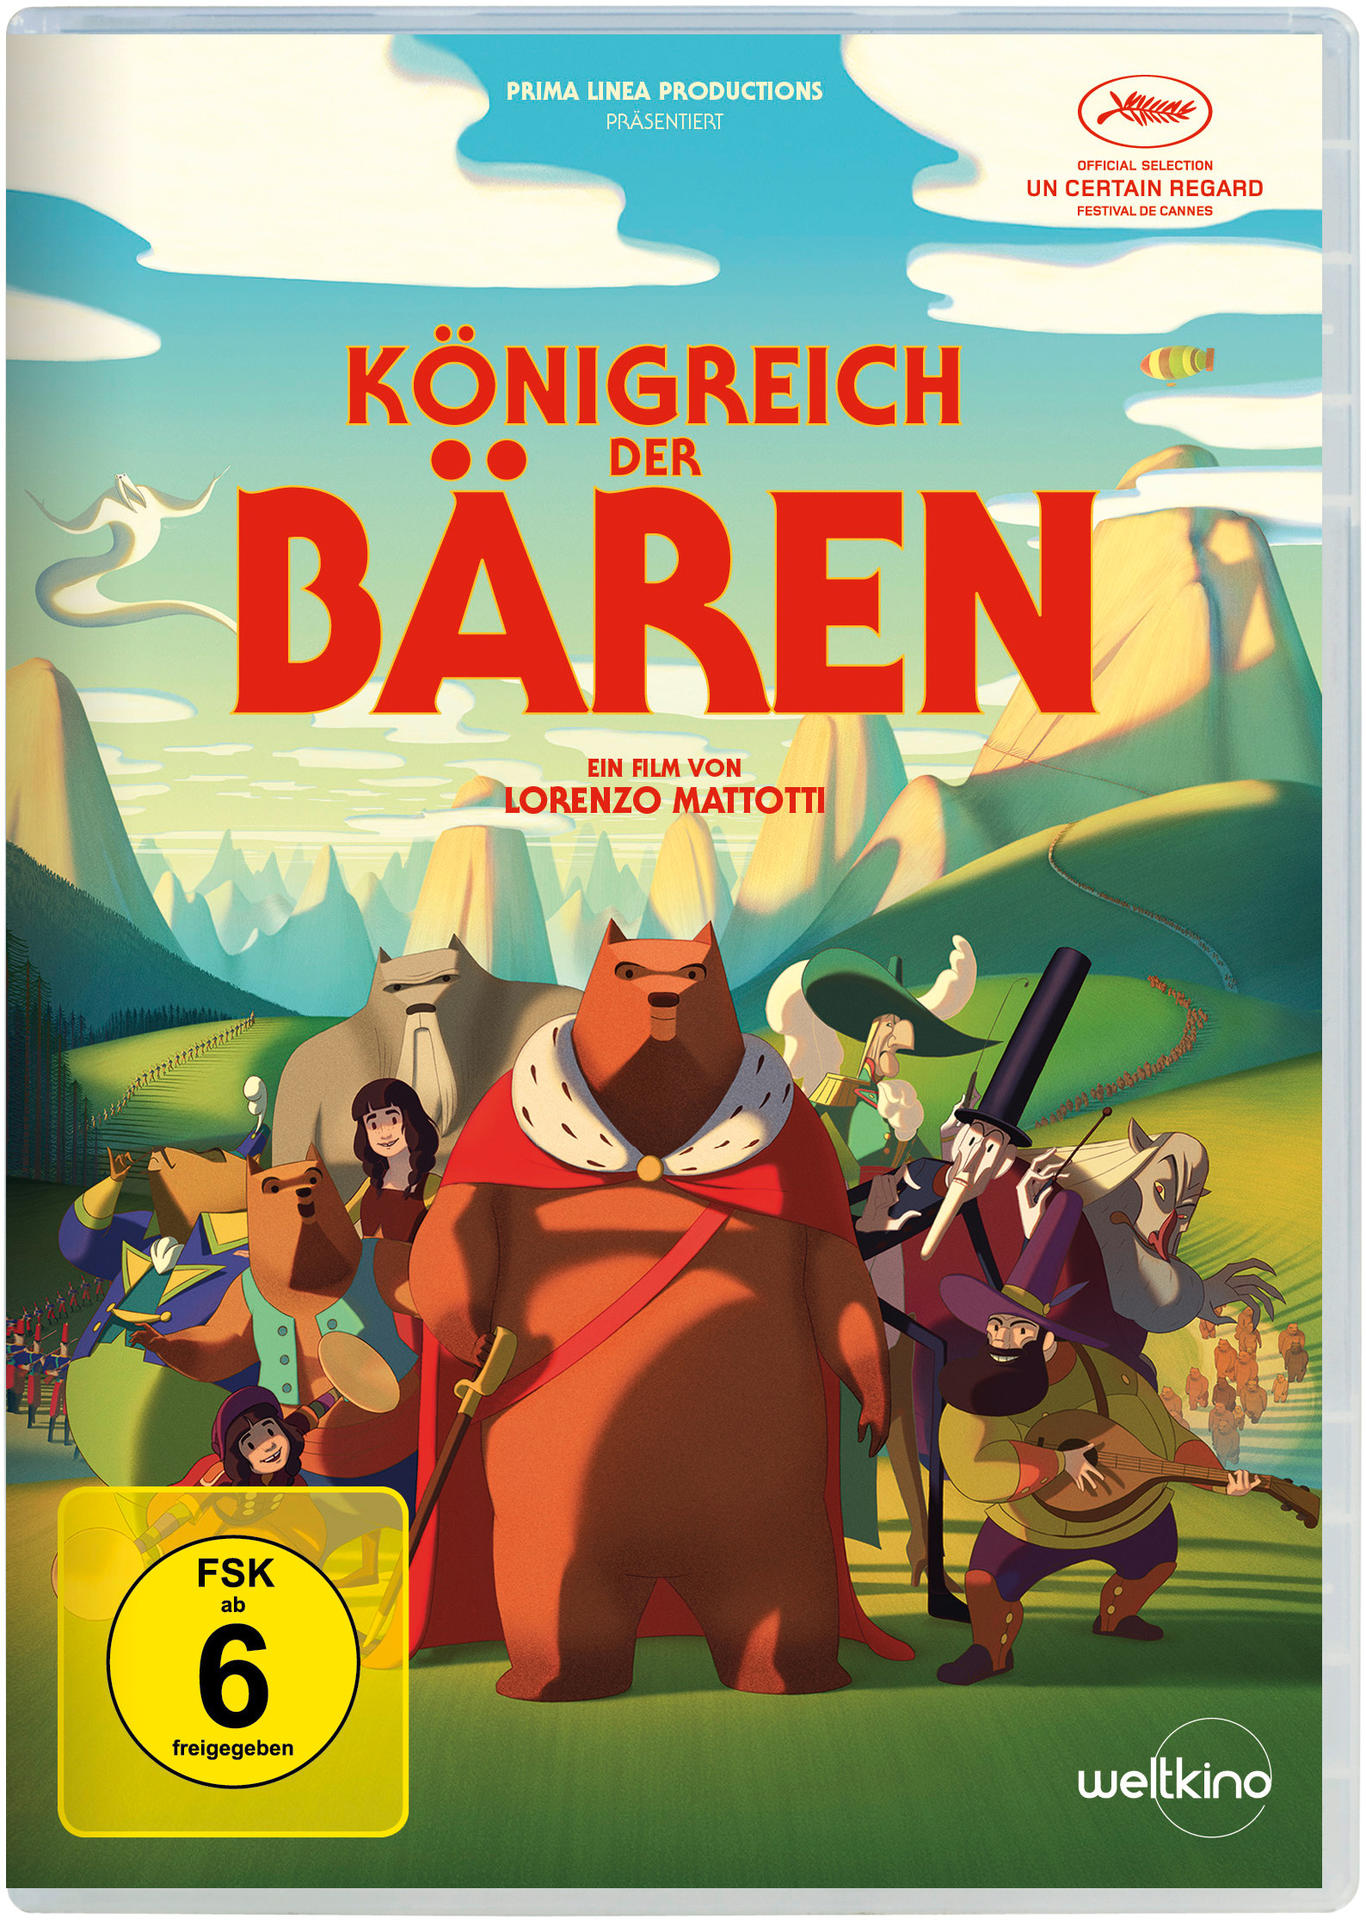 Königreich DVD Bären der